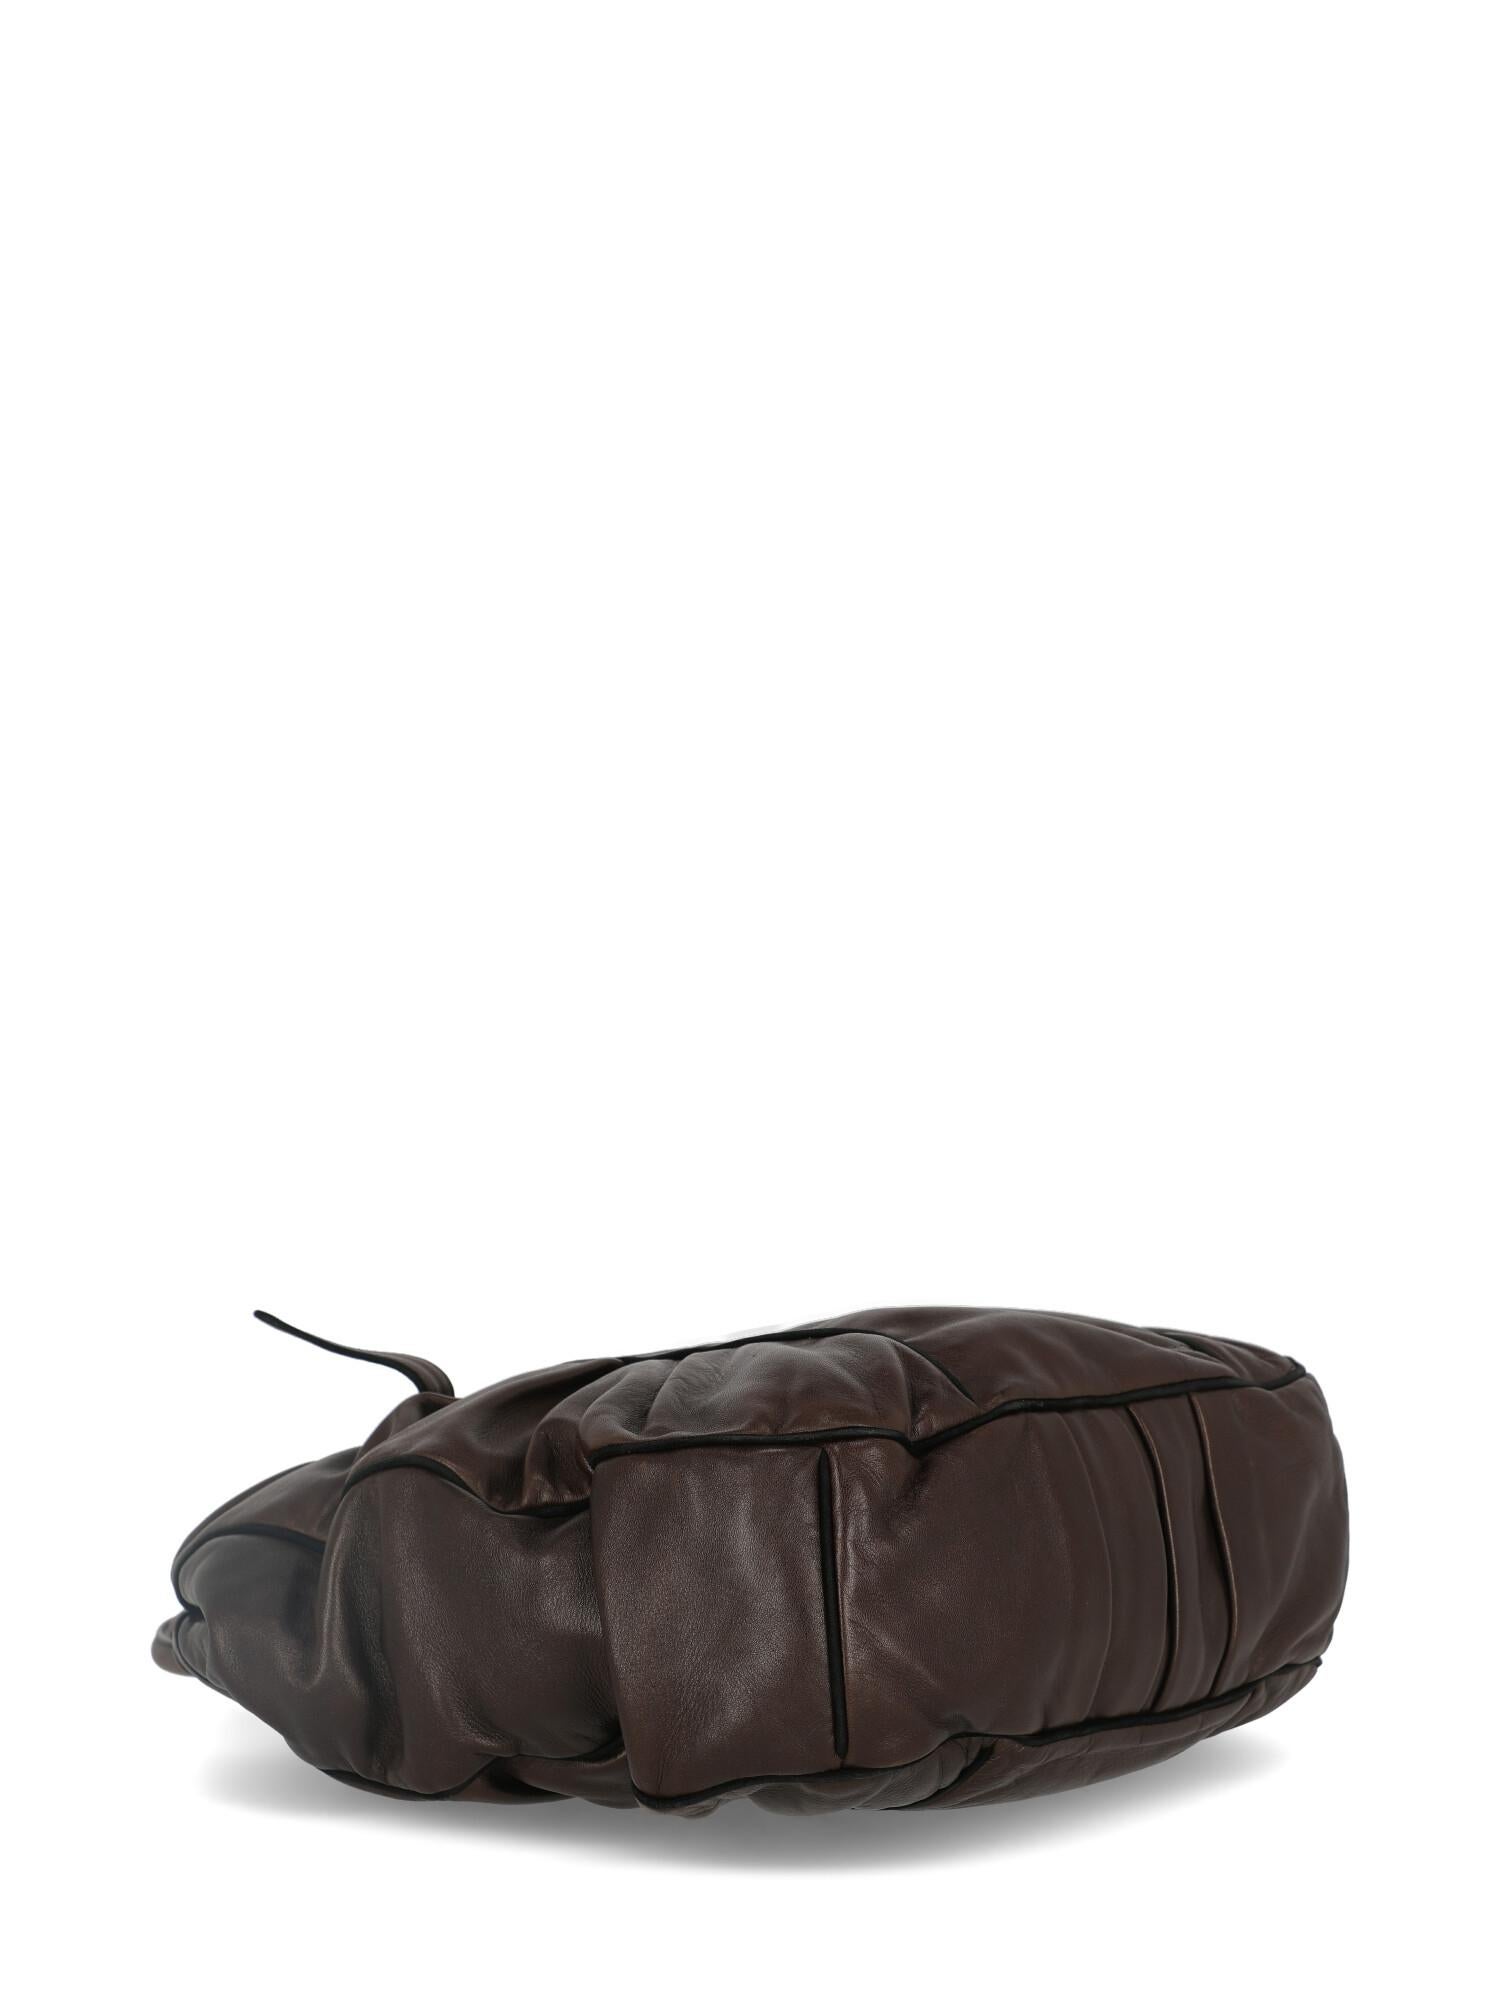 Women's Marni Woman Handbag Brown Leather For Sale